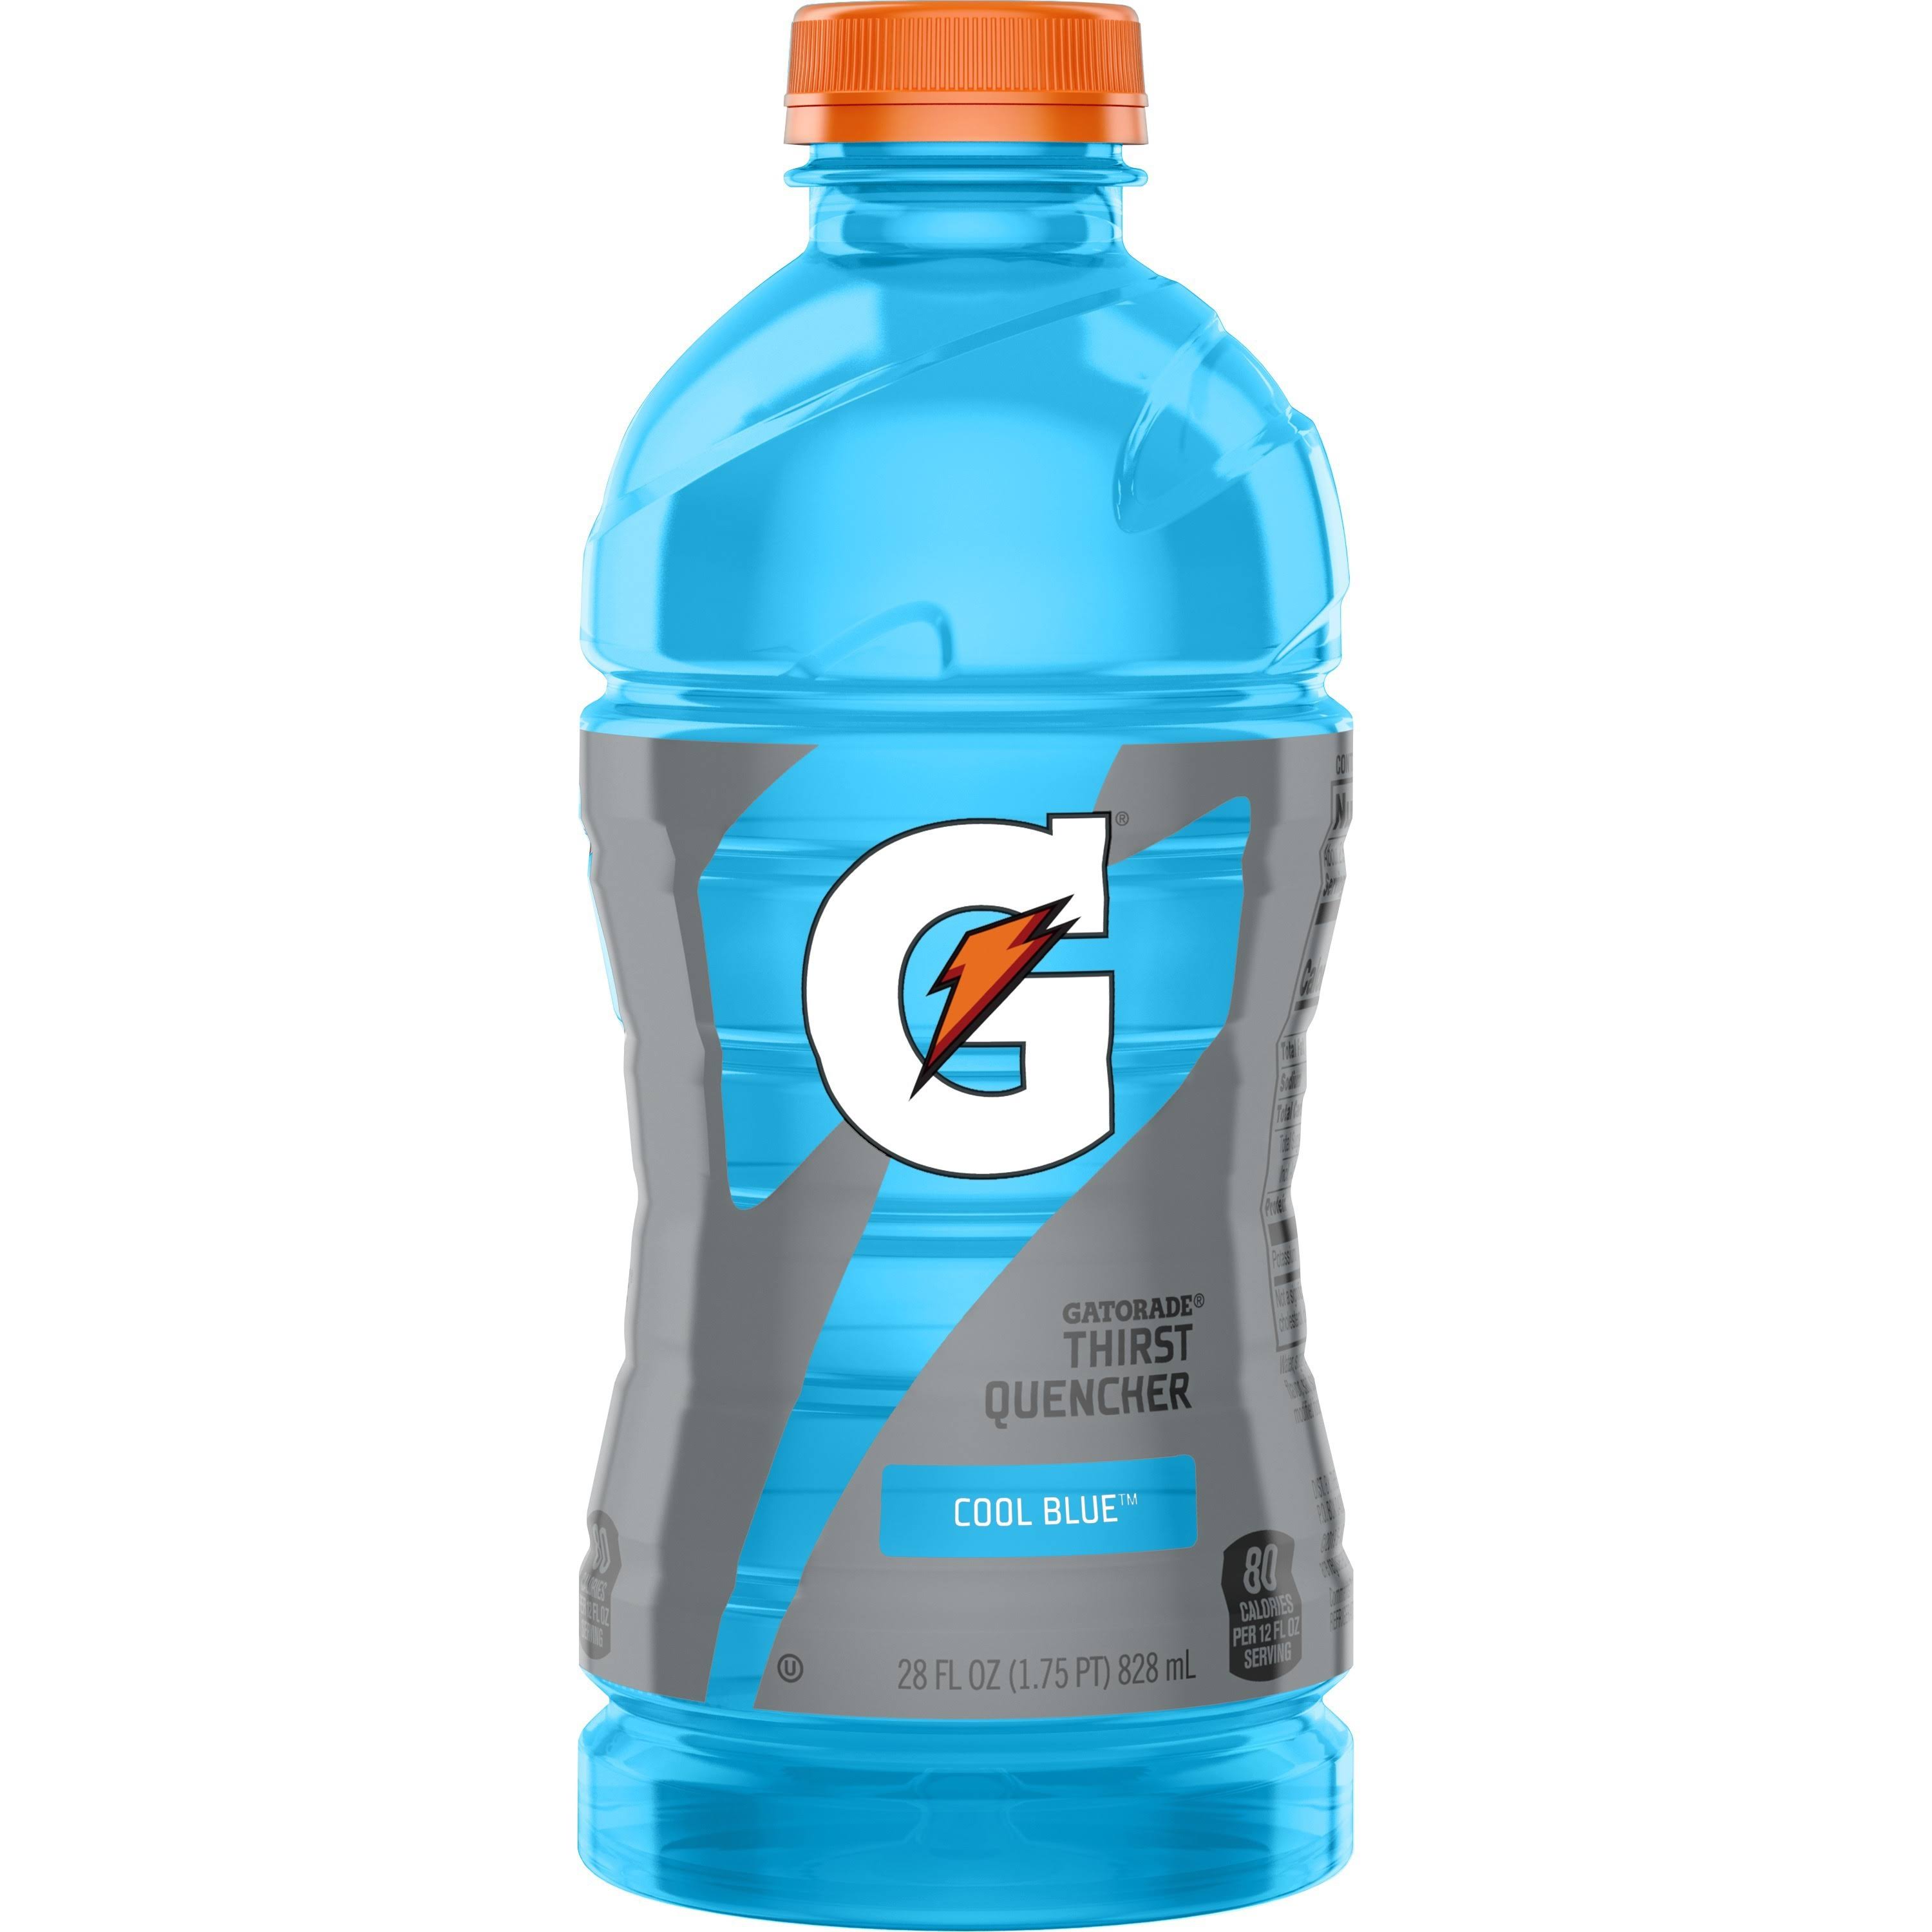 Gatorade Thirst Quencher, Cool Blue - 28 fl oz